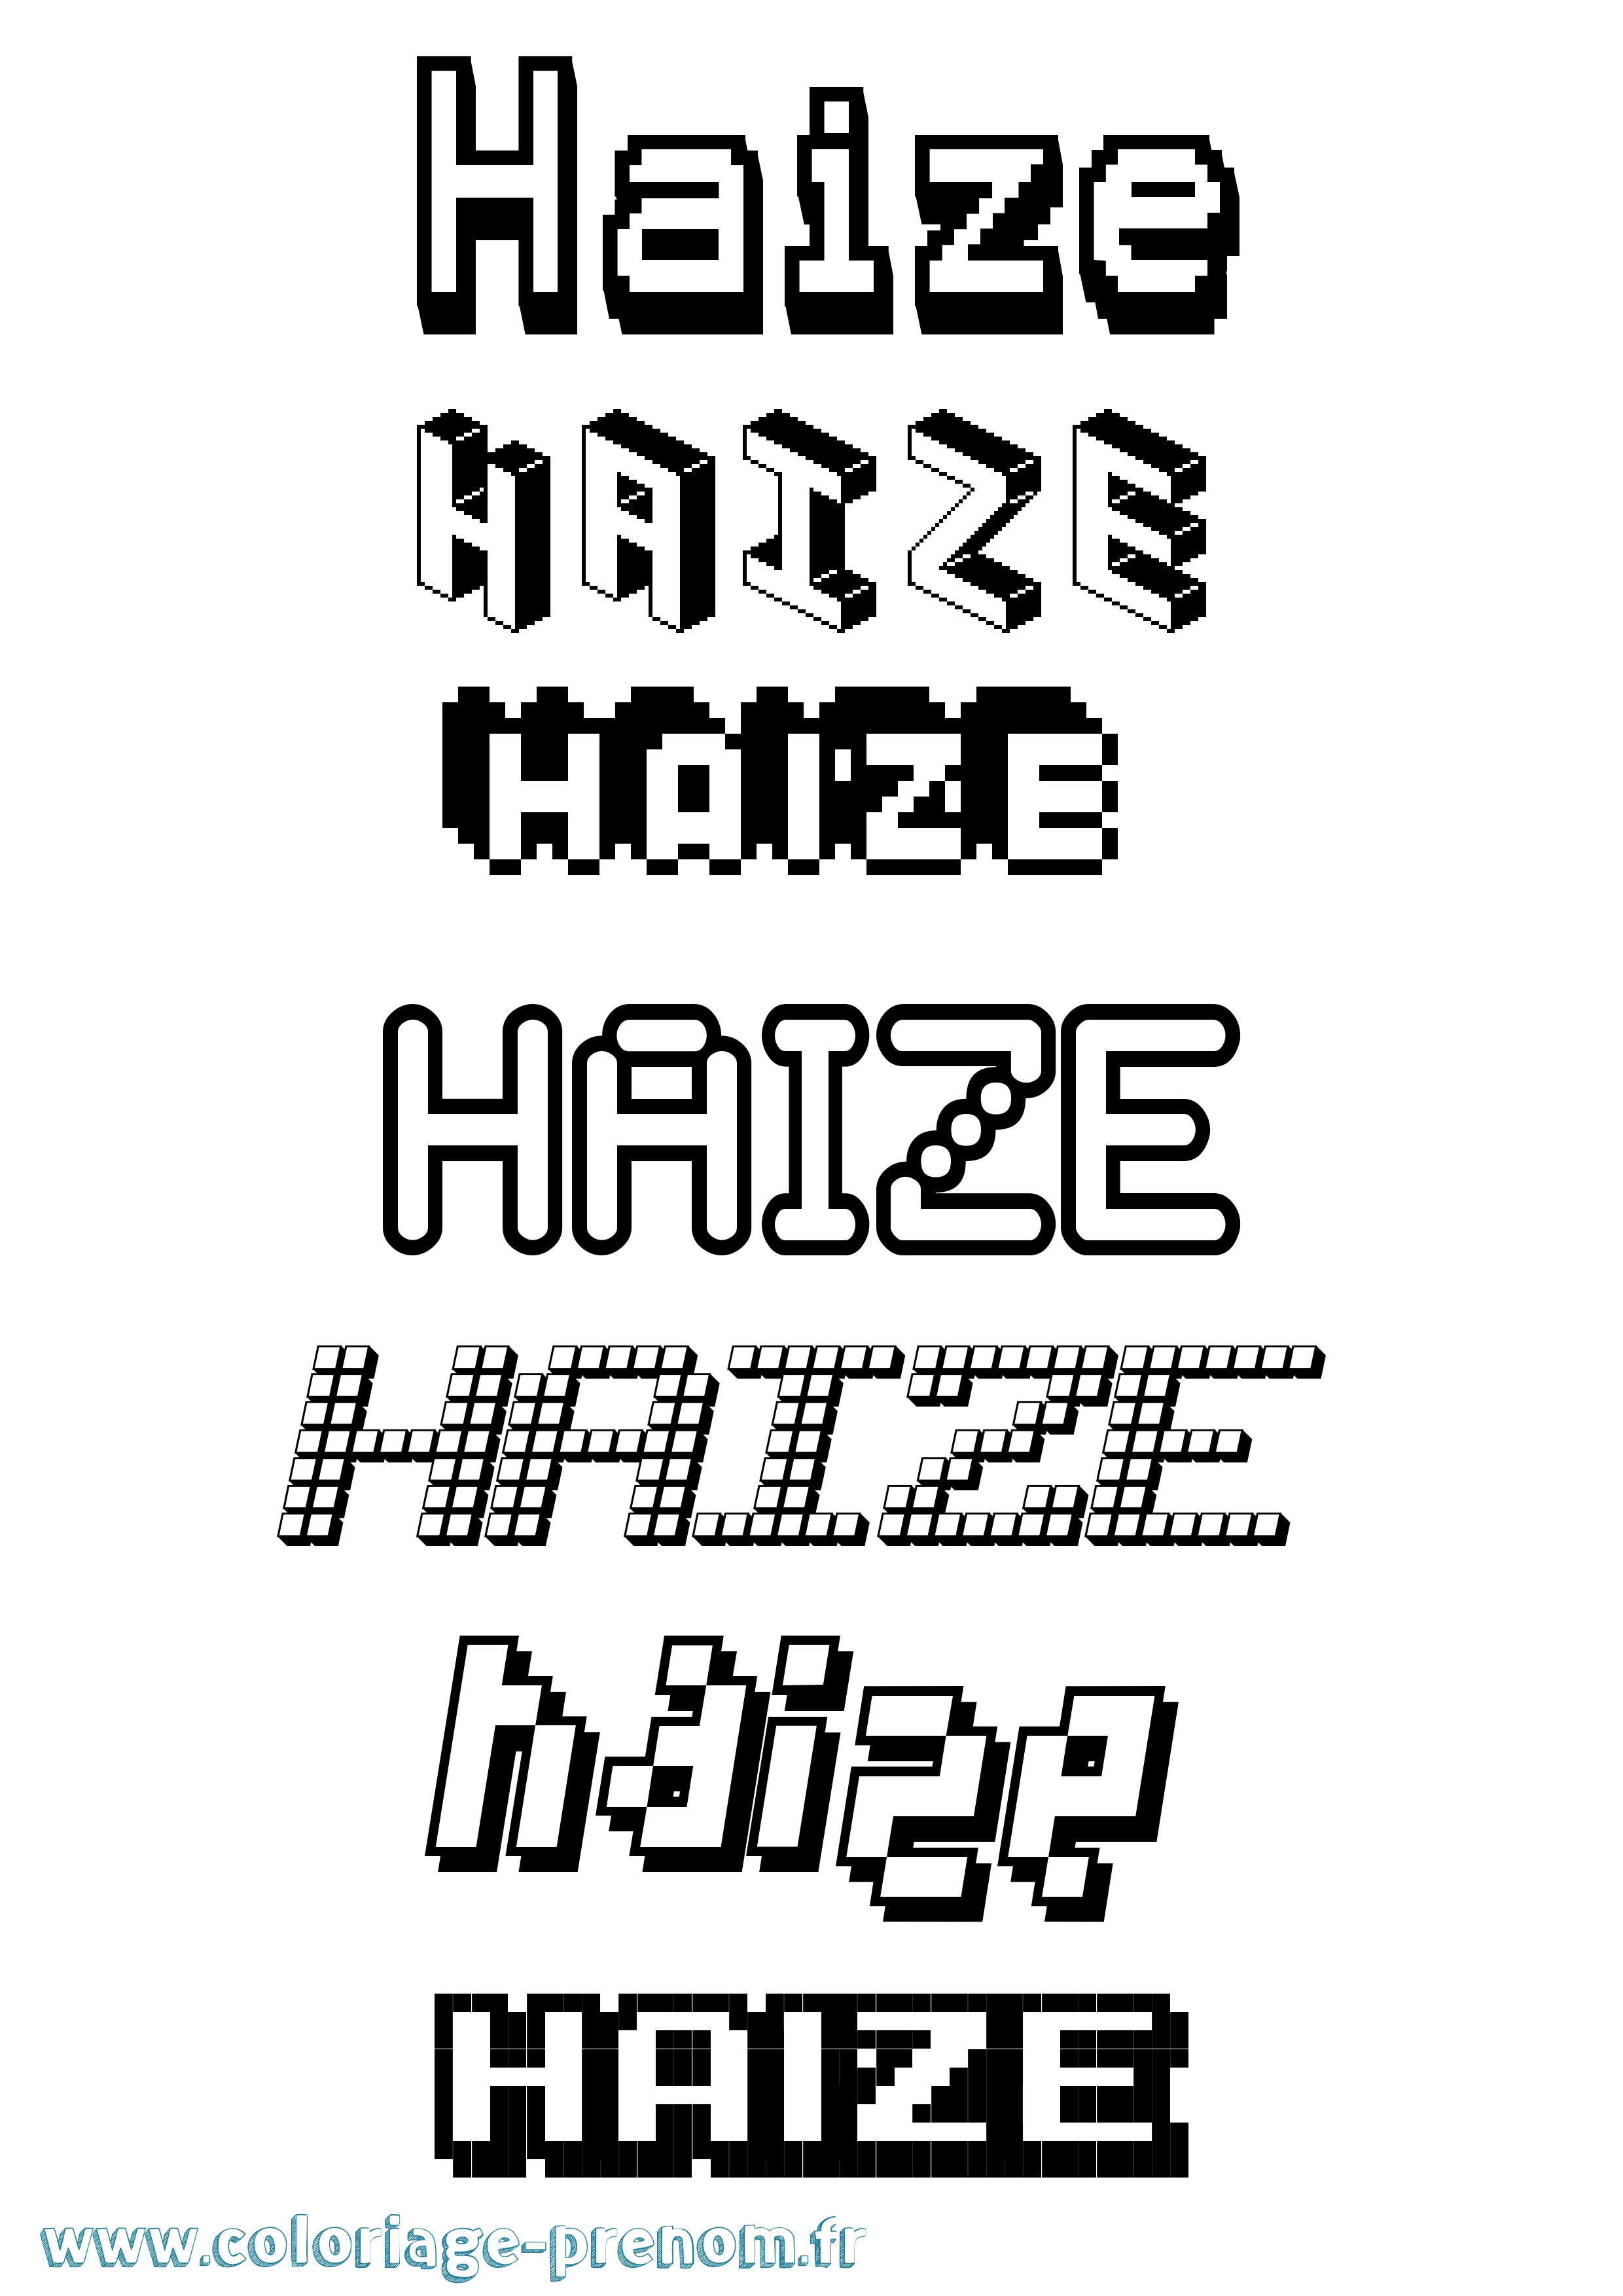 Coloriage prénom Haize Pixel